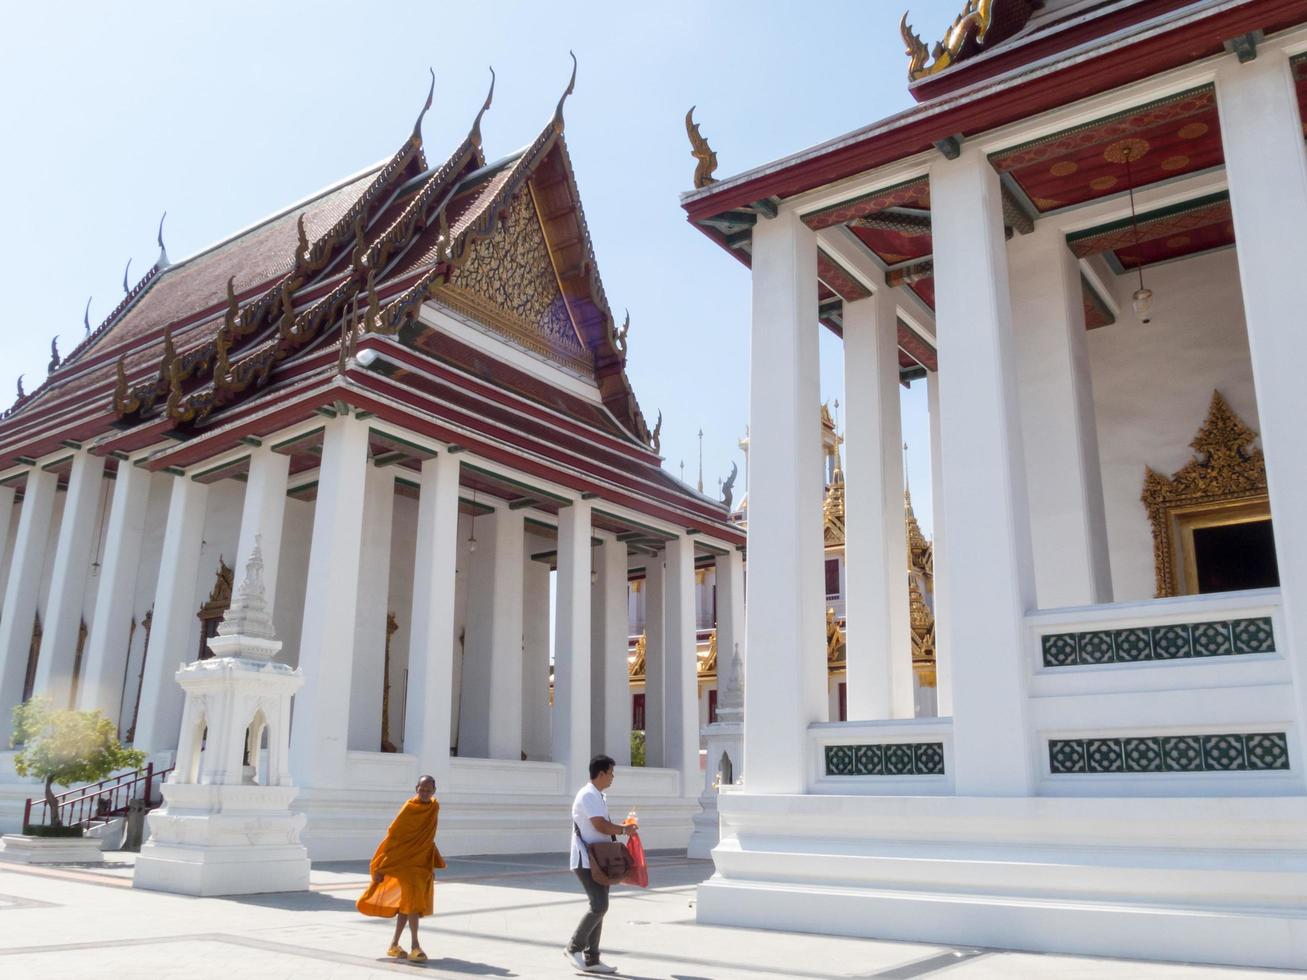 loha prasat wat ratchanatda tempel bangkok thailand13 december 2018byggt 1846 i slutet av kung rama i. den gamla fruktträdgården är cirka 25 rai.on bangkok thailand13 december 2018. foto